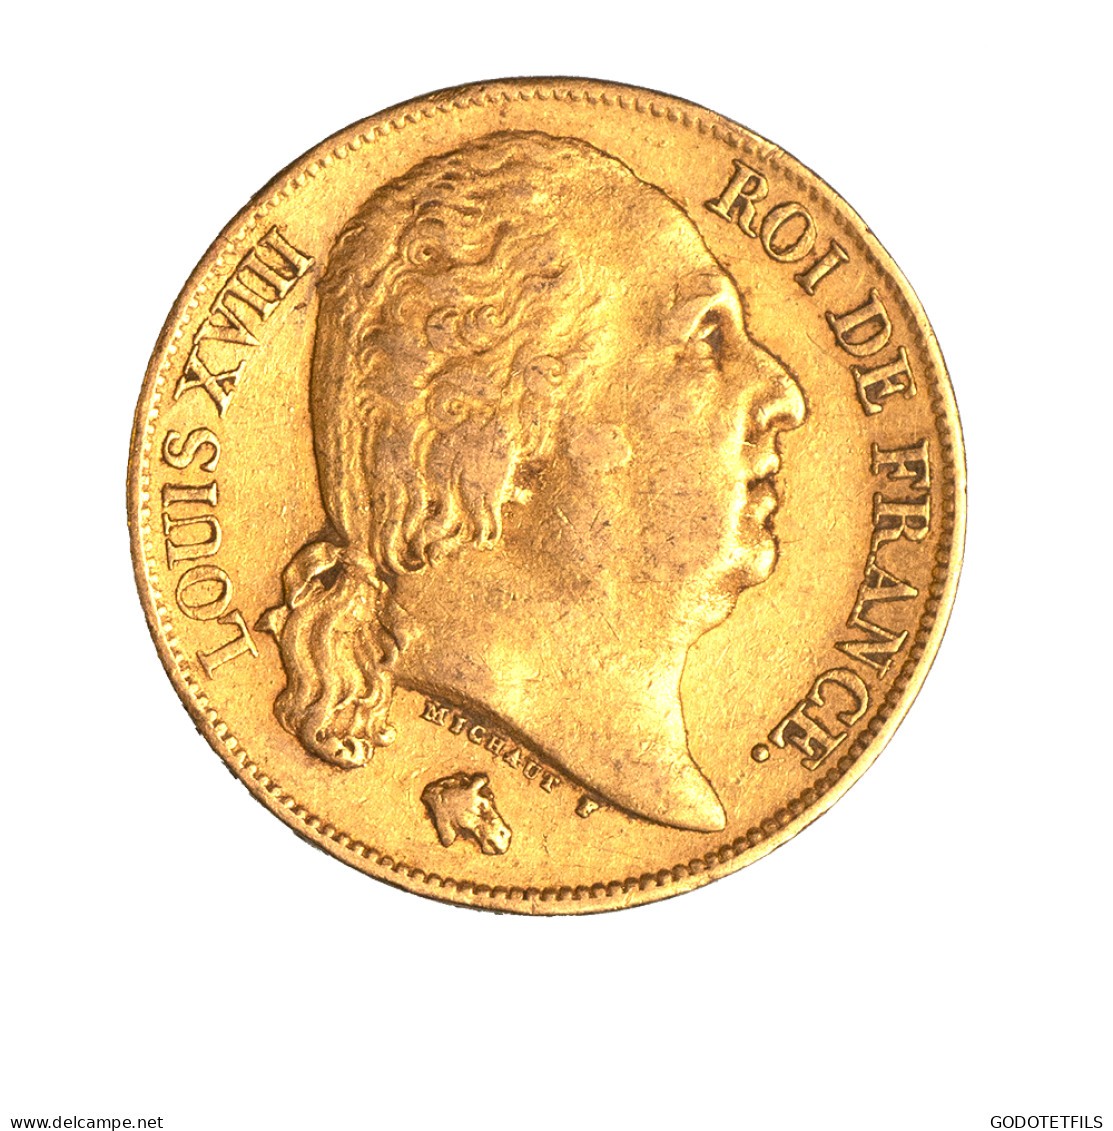 Louis XVIII-20 Francs 1820 Paris - 20 Francs (gold)